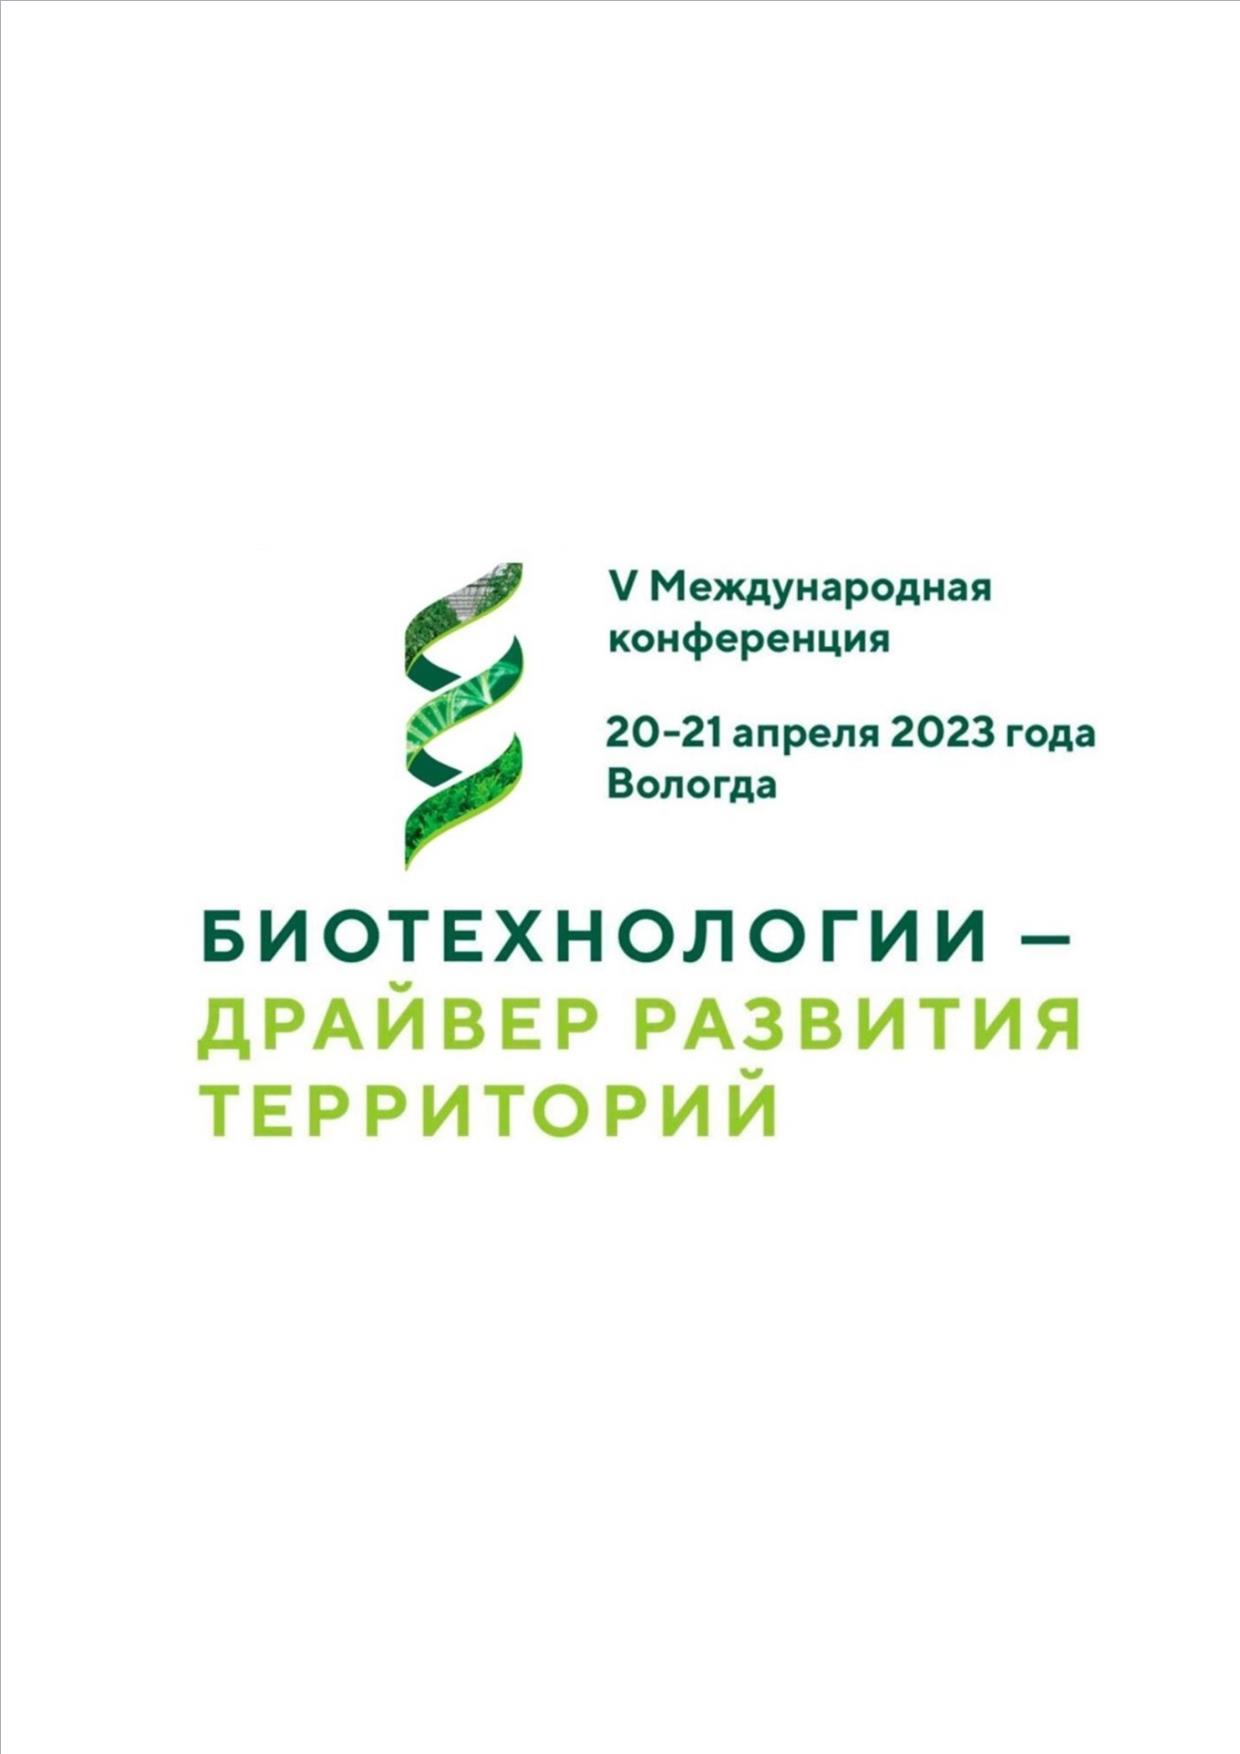 20 - 21 апреля 2023 года в Вологде состоится V Международная Научно-практическая конференция «Биотехнологии – драйвер развития территорий».